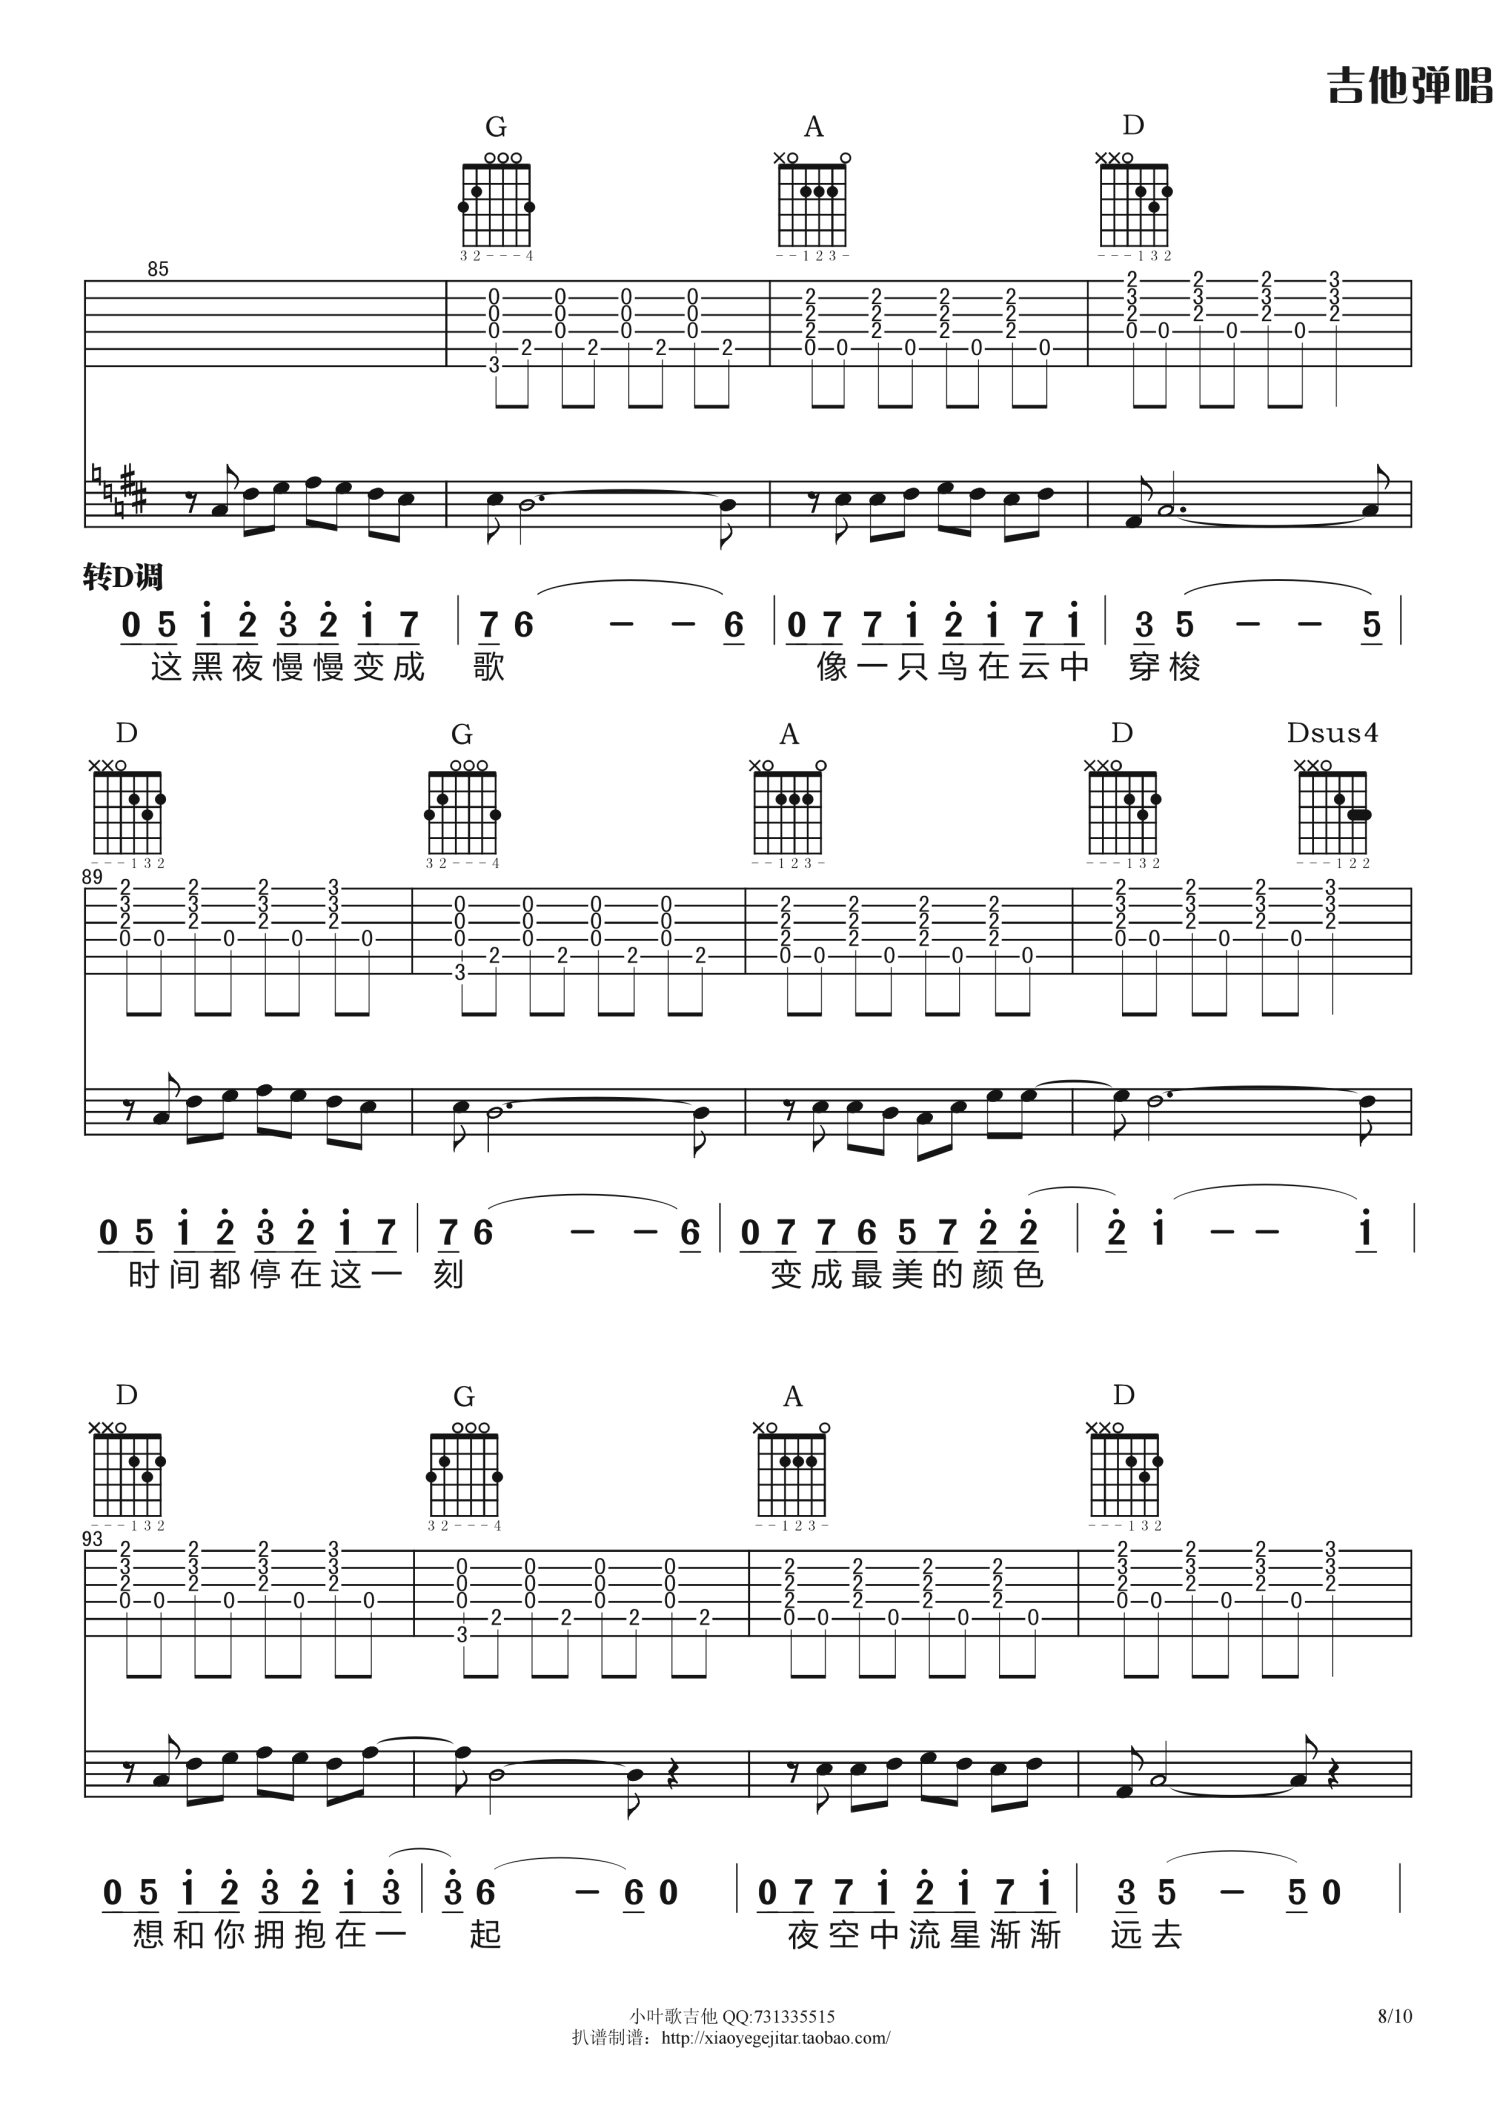 《梦灯笼》吉他谱C调_无需变调夹_简化前奏版弹唱教学教程 - 吉他简谱